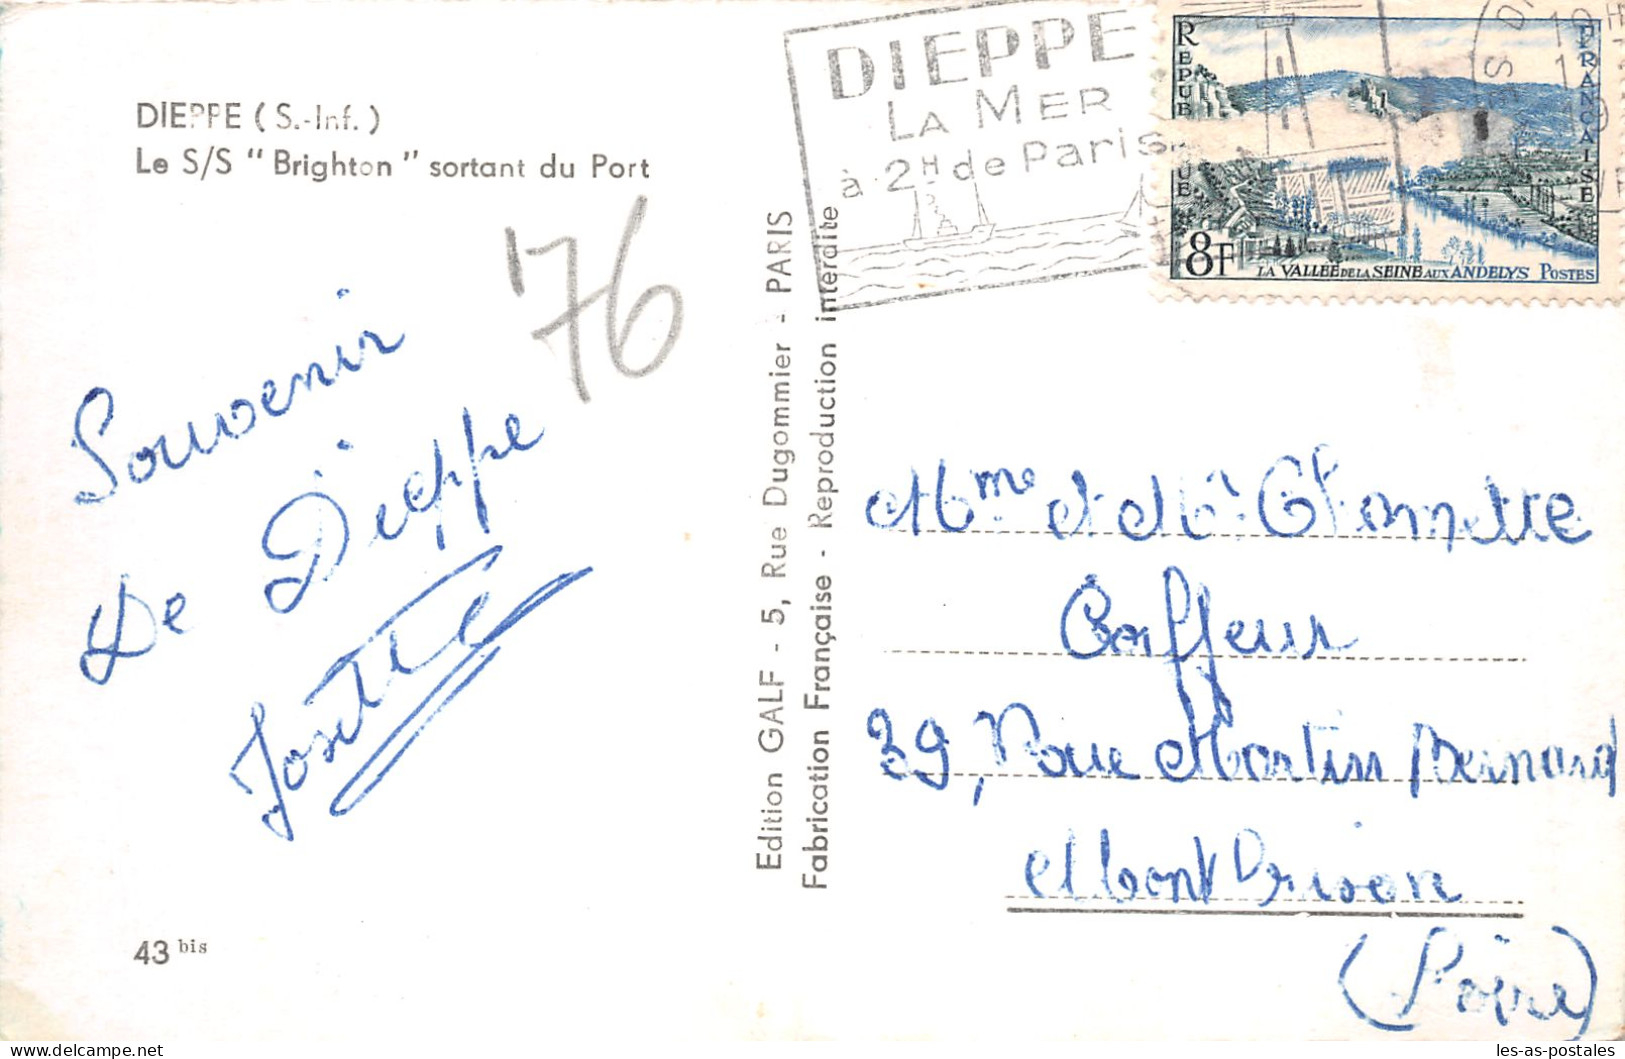 76 DIEPPE SS BRIGHTON - Dieppe